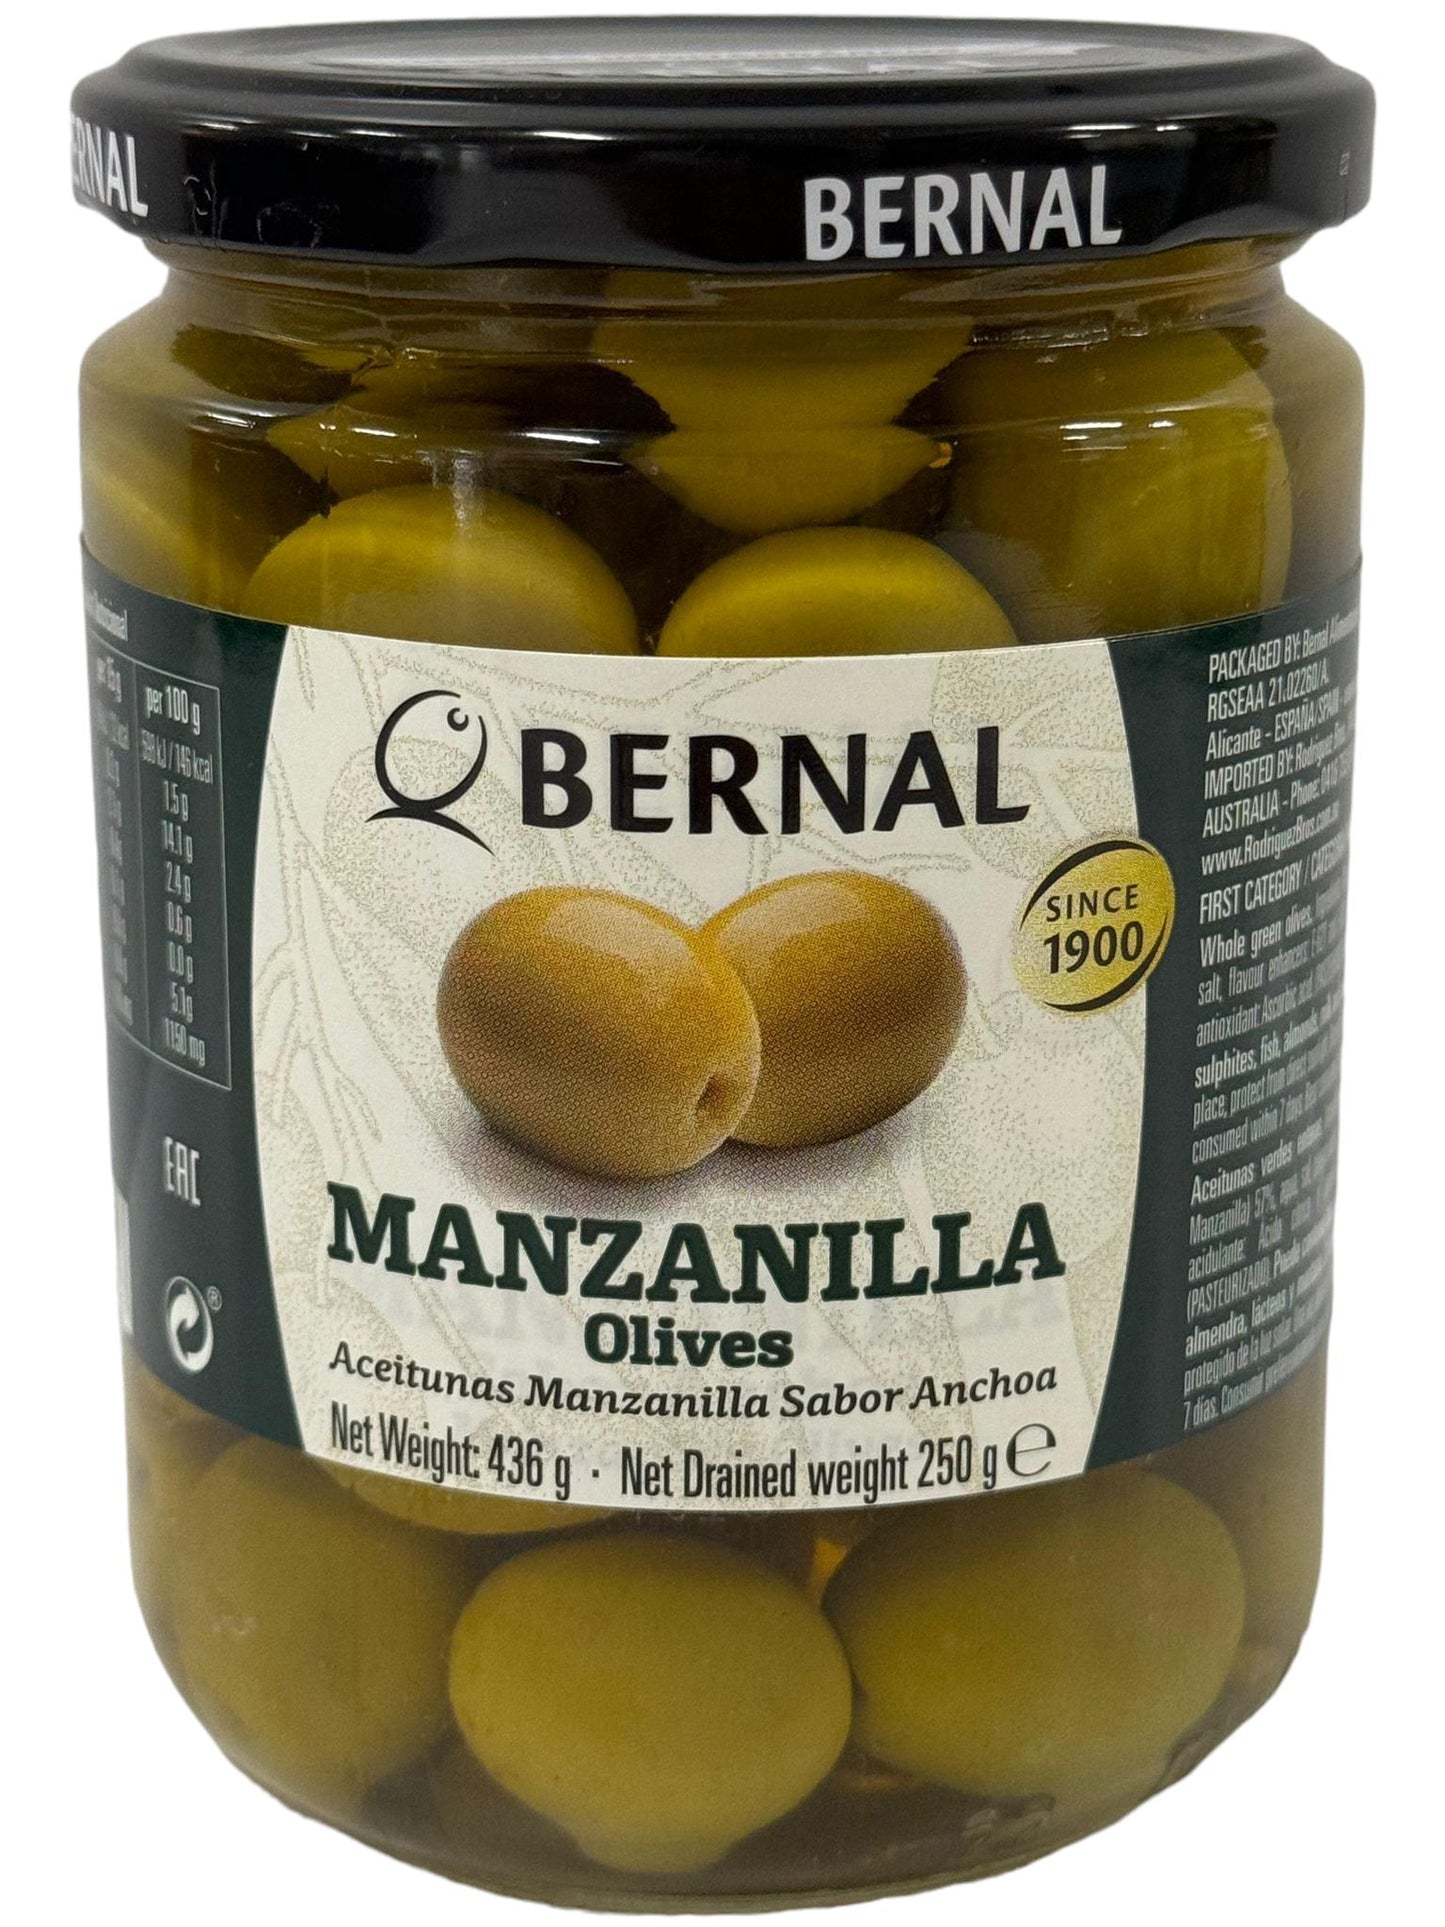 Bernal Manzanilla Olives 436g Best Before End of Jan 2027